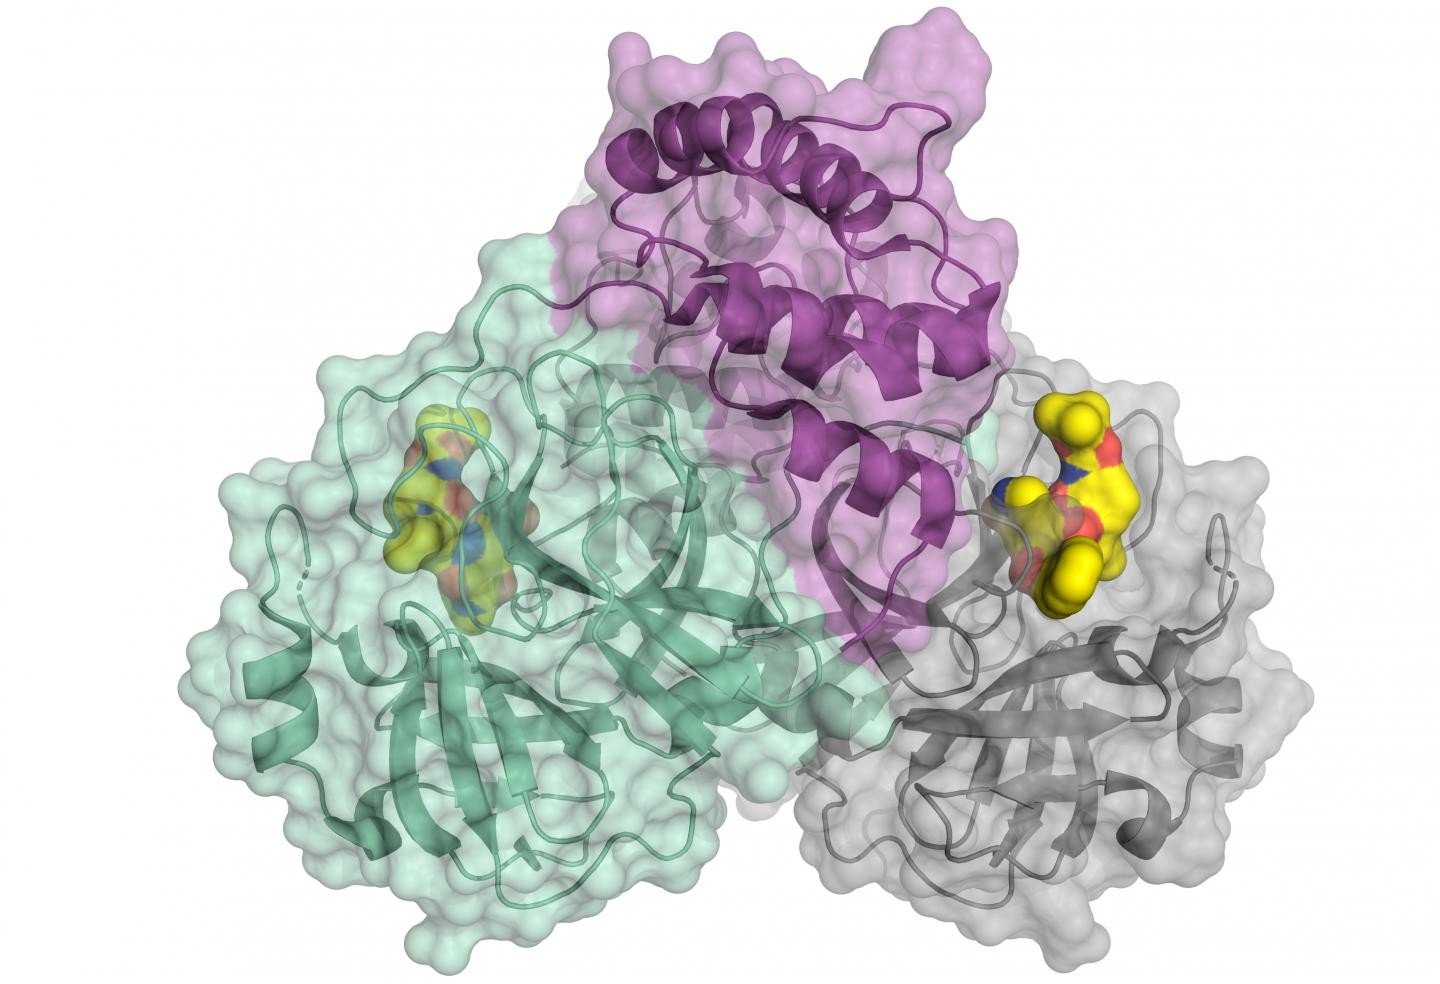 Cientistas recriam protease responsável pela multiplicação do SARS-CoV-2. Representação esquemática da protease de coronavírus. A enzima vem como um dímero composto por duas moléculas idênticas. Uma parte do dímero é mostrada em cores (verde e roxo), a outra em cinza. A molécula pequena em amarelo liga-se ao centro ativo da protease e pode ser usada como modelo para um inibidor. (Foto: Science/HZB)